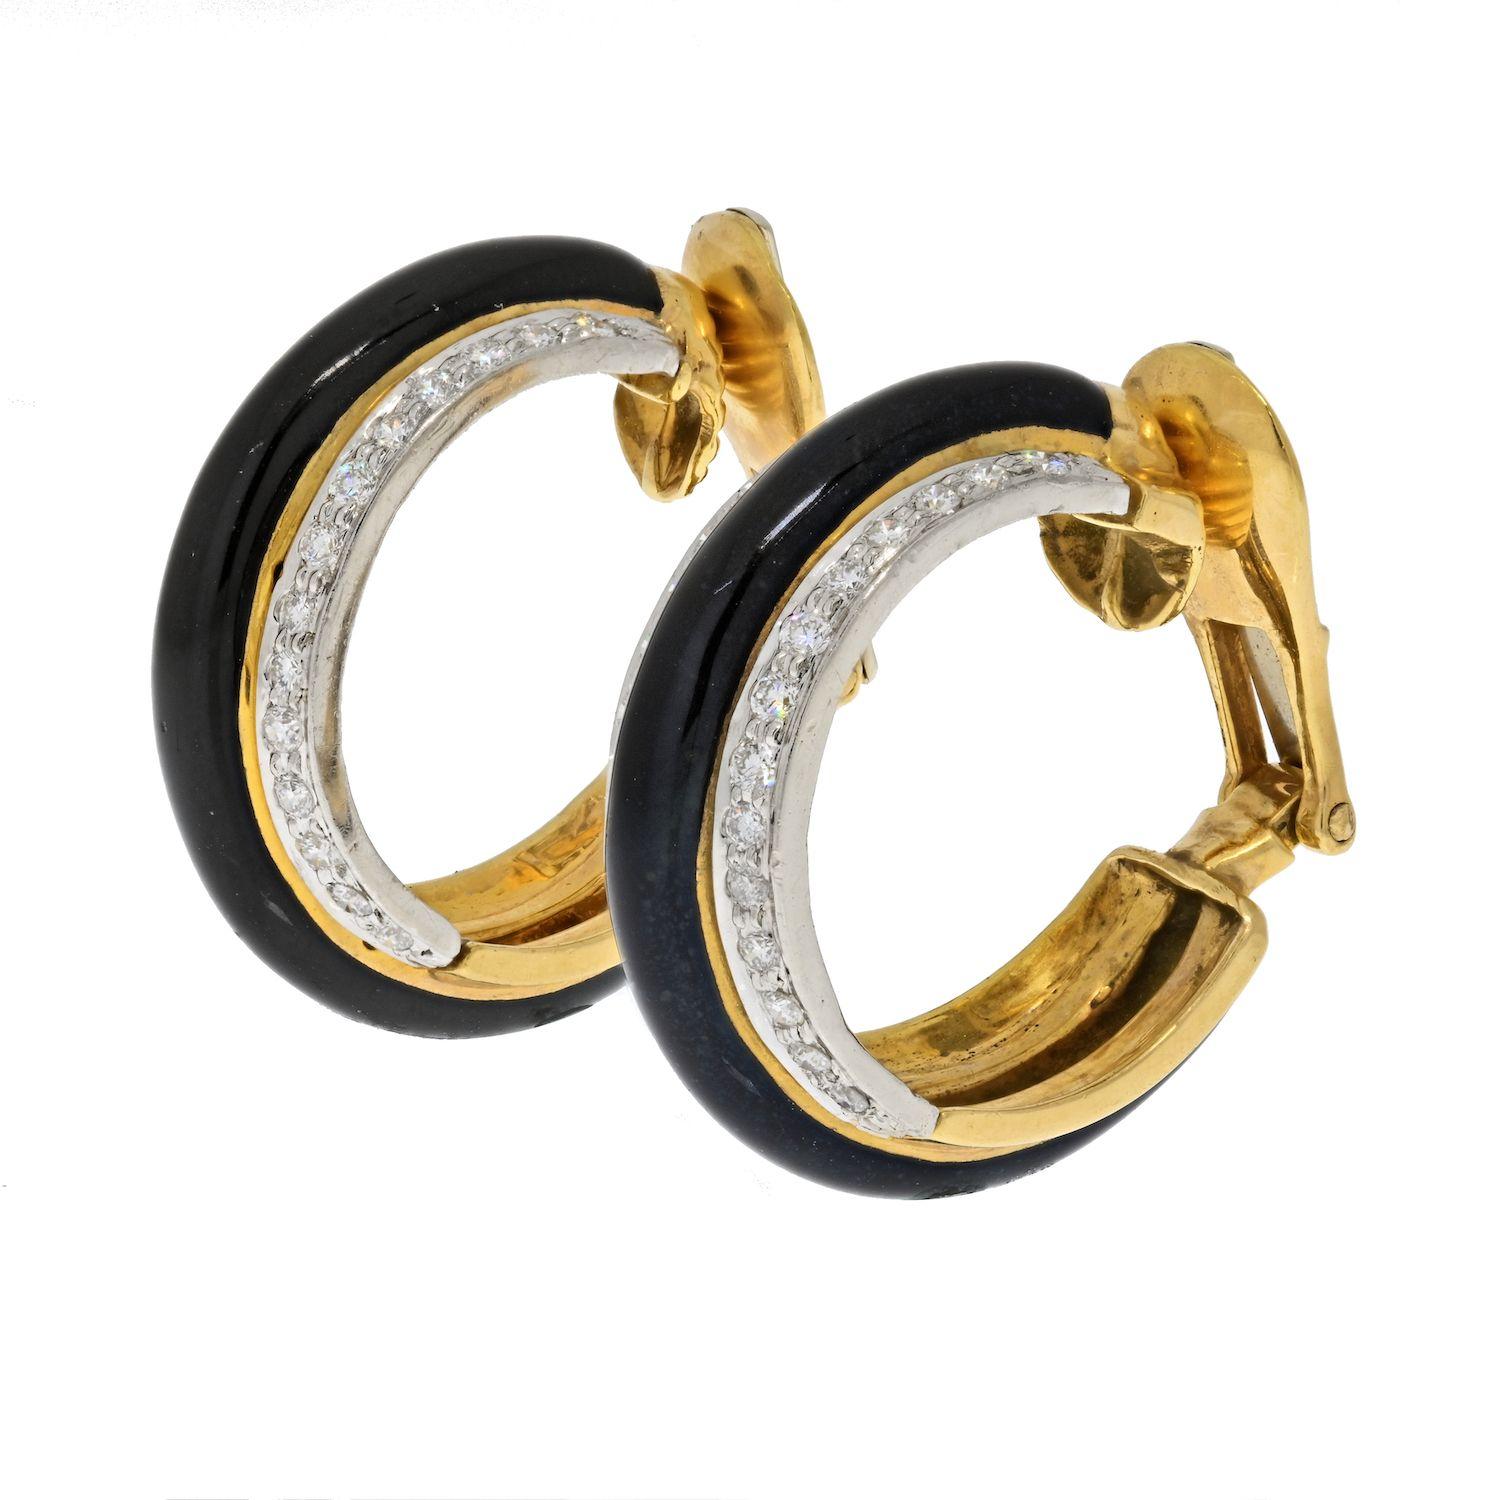 Ces boucles d'oreilles David Webb sont des anneaux ronds composés d'or jaune 18 carats, d'émail noir et de diamants. Le design de ces boucles d'oreilles à cerceau illustre la créativité de la maison David Webb. Plutôt qu'une seule rangée de